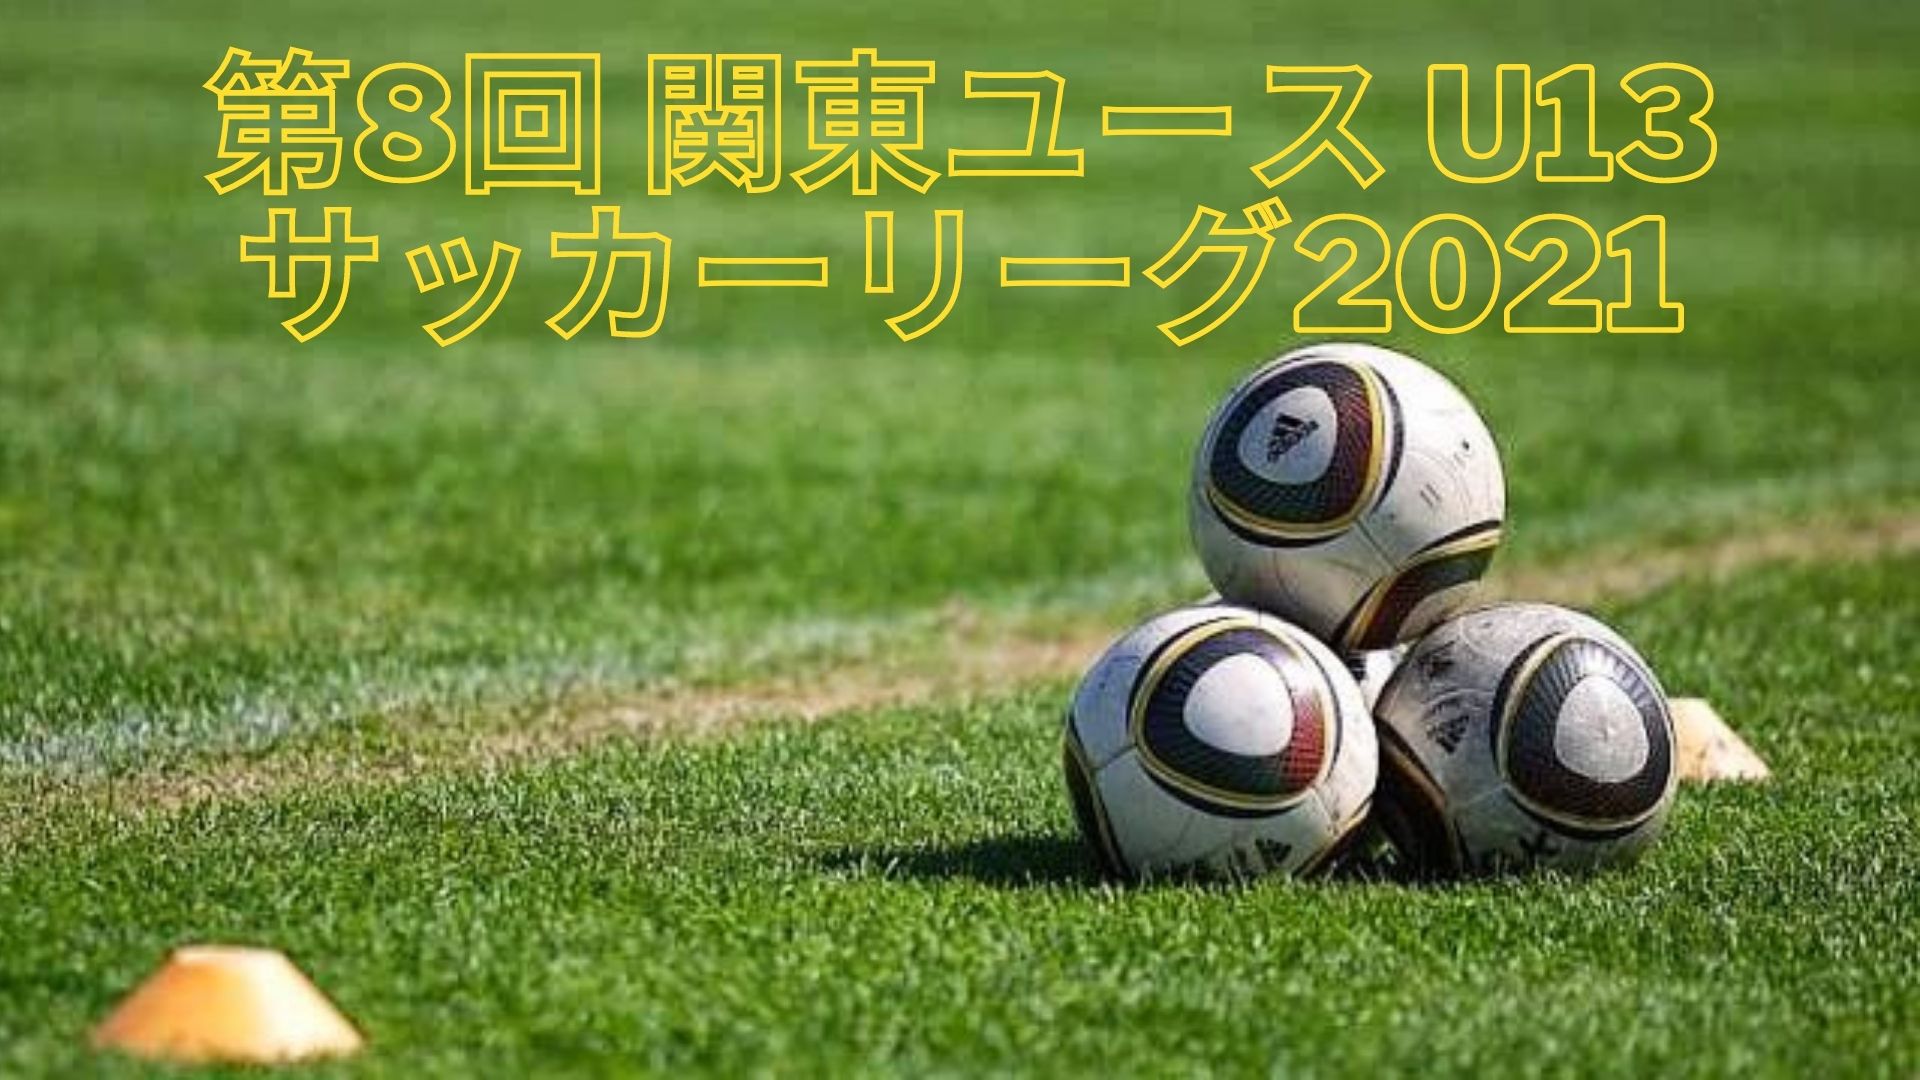 第8回 関東ユース U13 サッカーリーグ21 参加チーム 日程 Tv放送